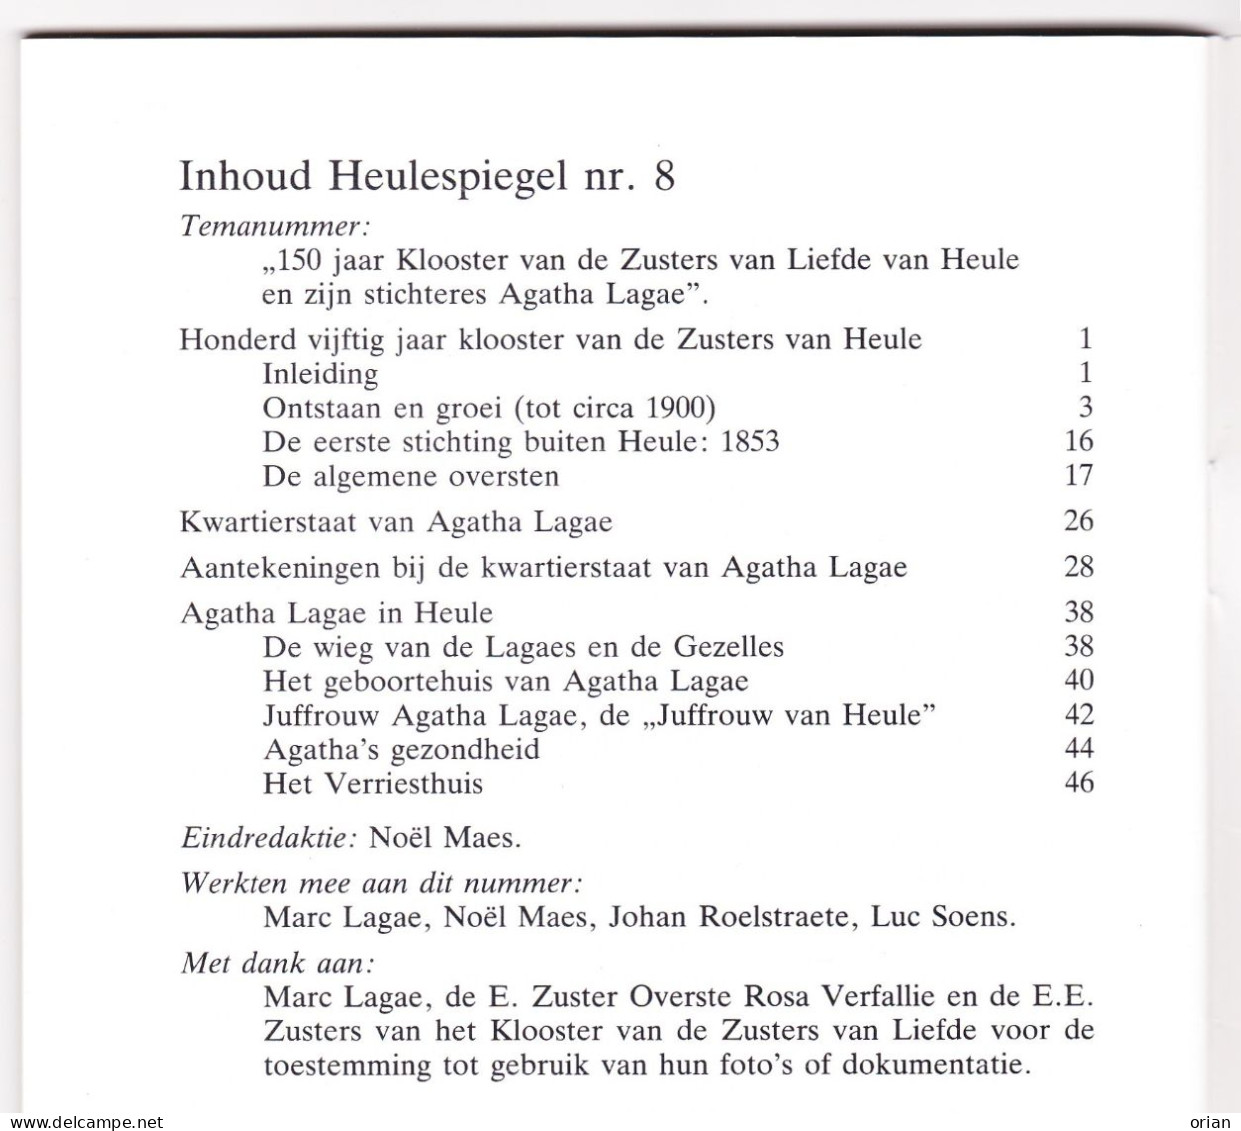 2 X Heulespiegel - Heemkundige Bijdrage - Tijdschriftjes Nrs 8 & 9 Uit 1988 - 150 Jaar Klooster Zrs V Liefde Heule - Geschiedenis